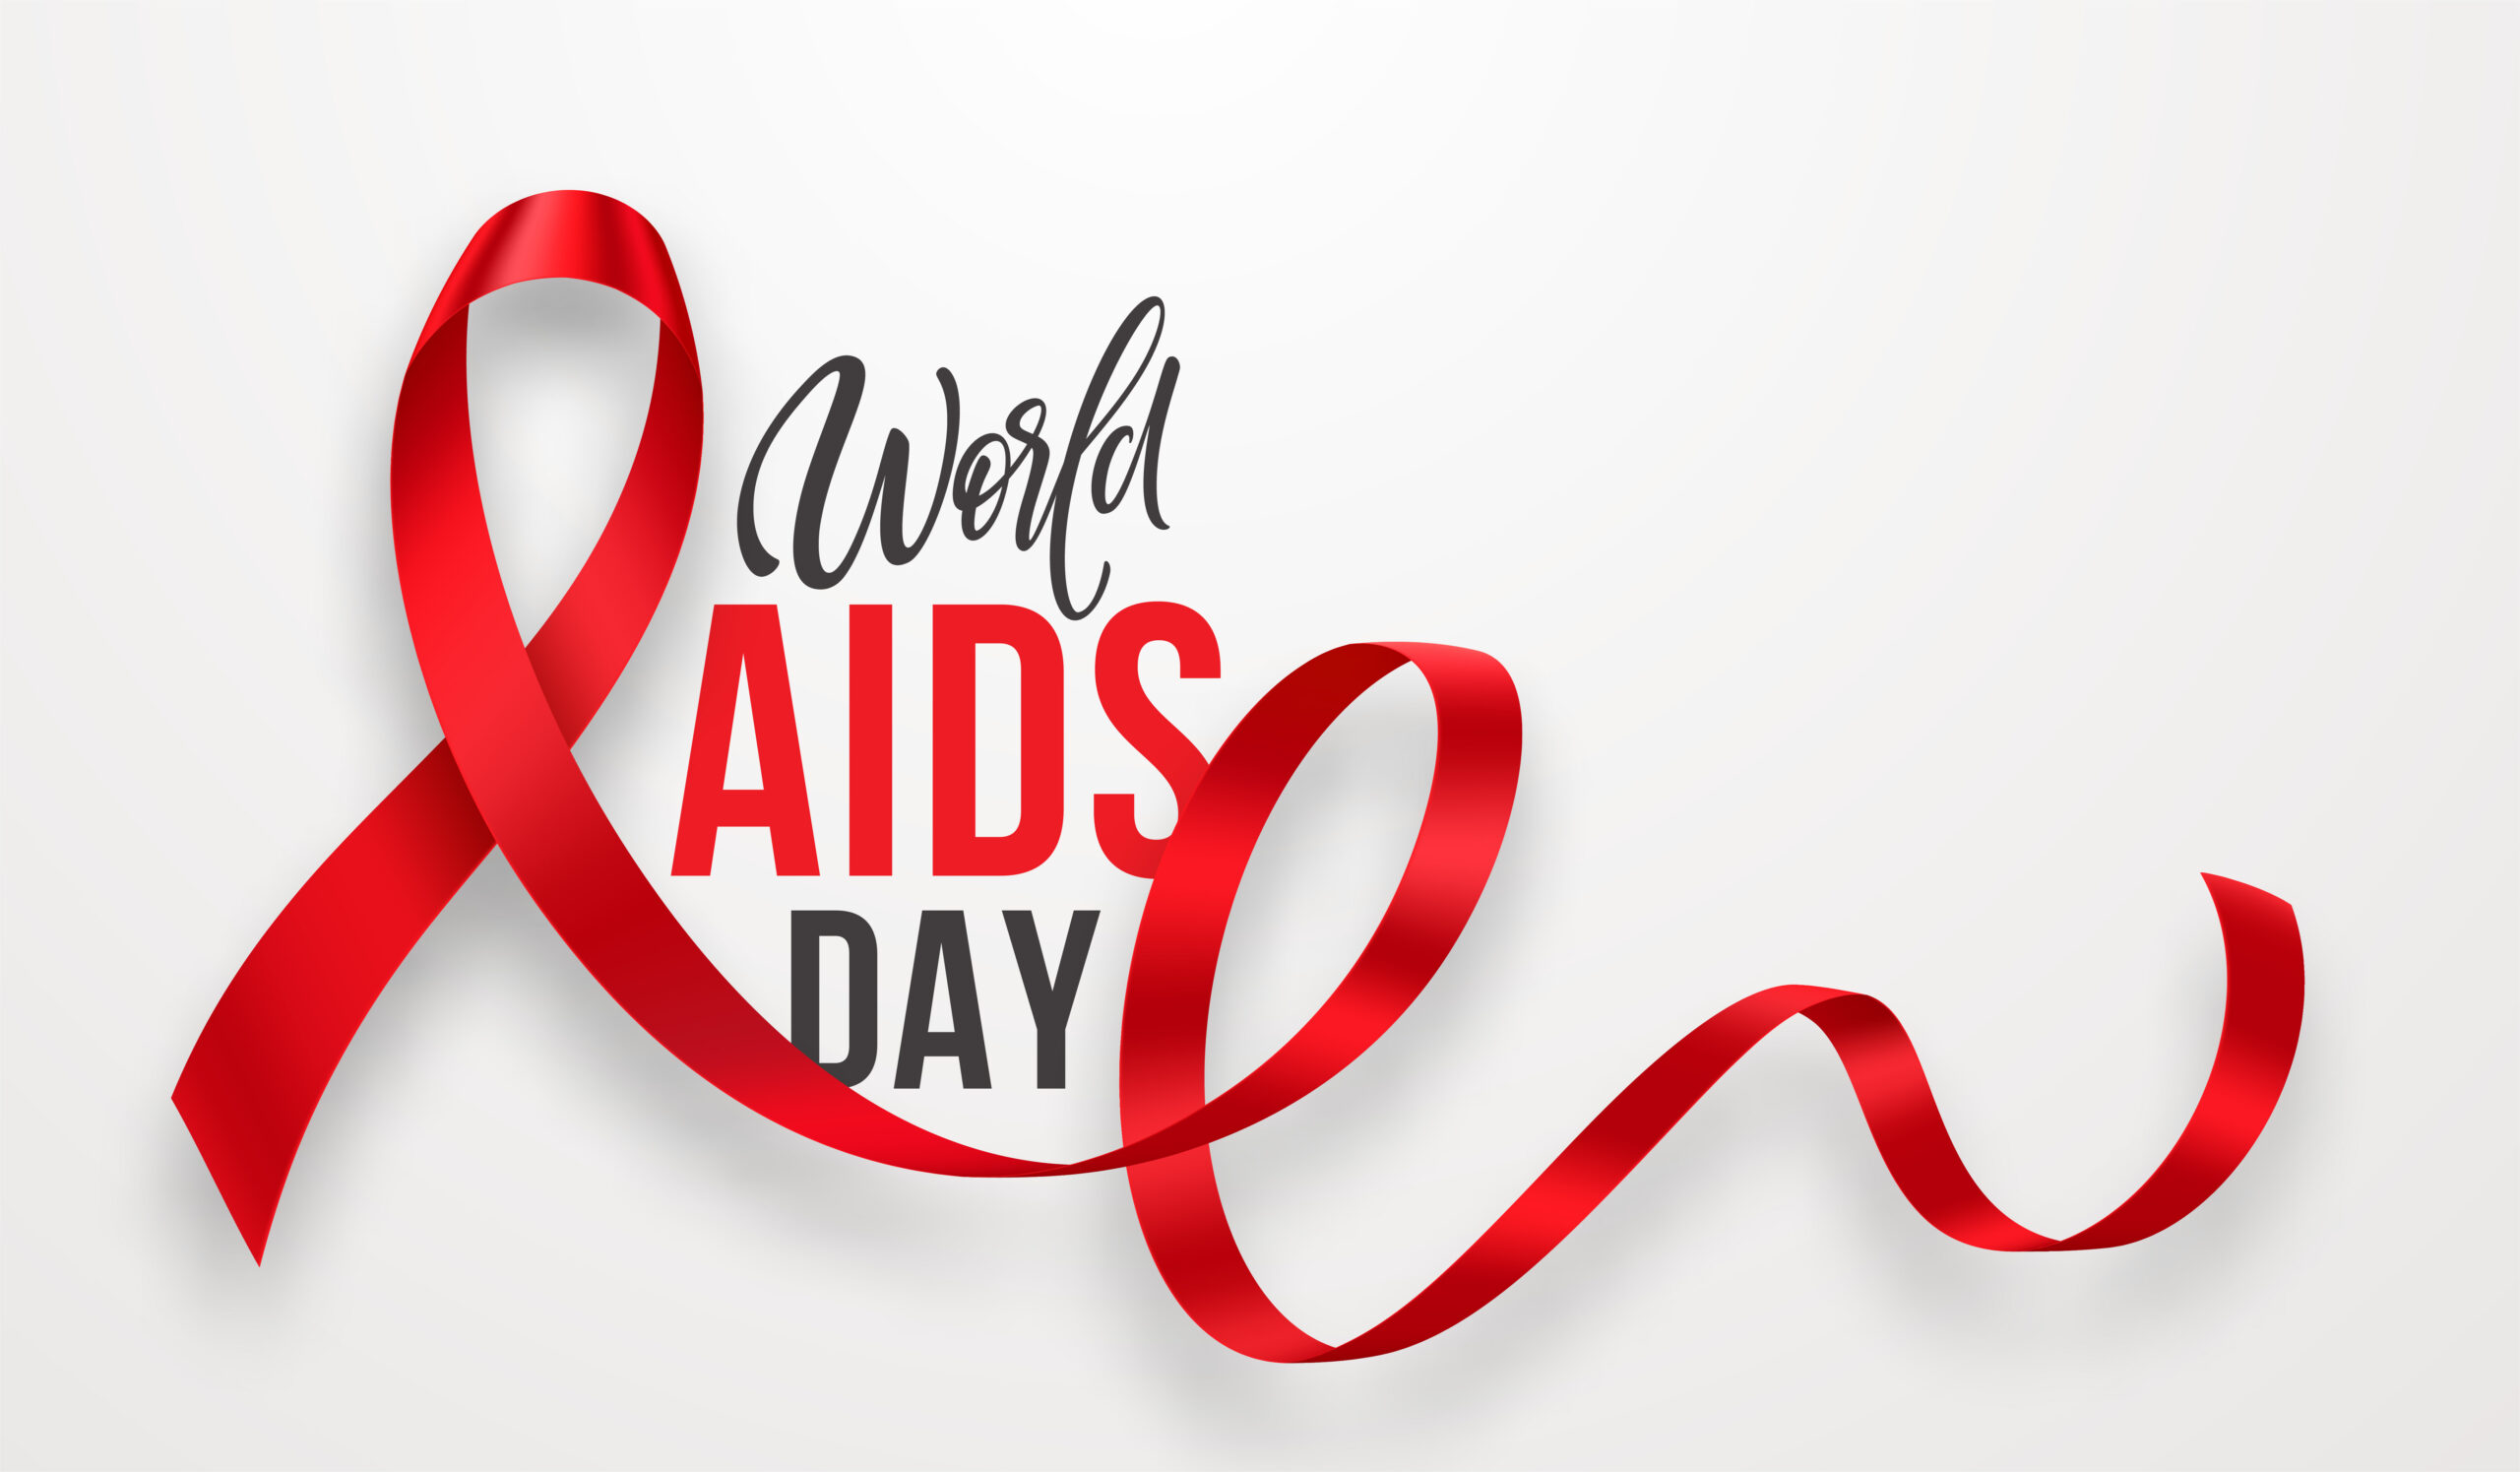 10 World AIDS Day Event Ideas Eventbrite